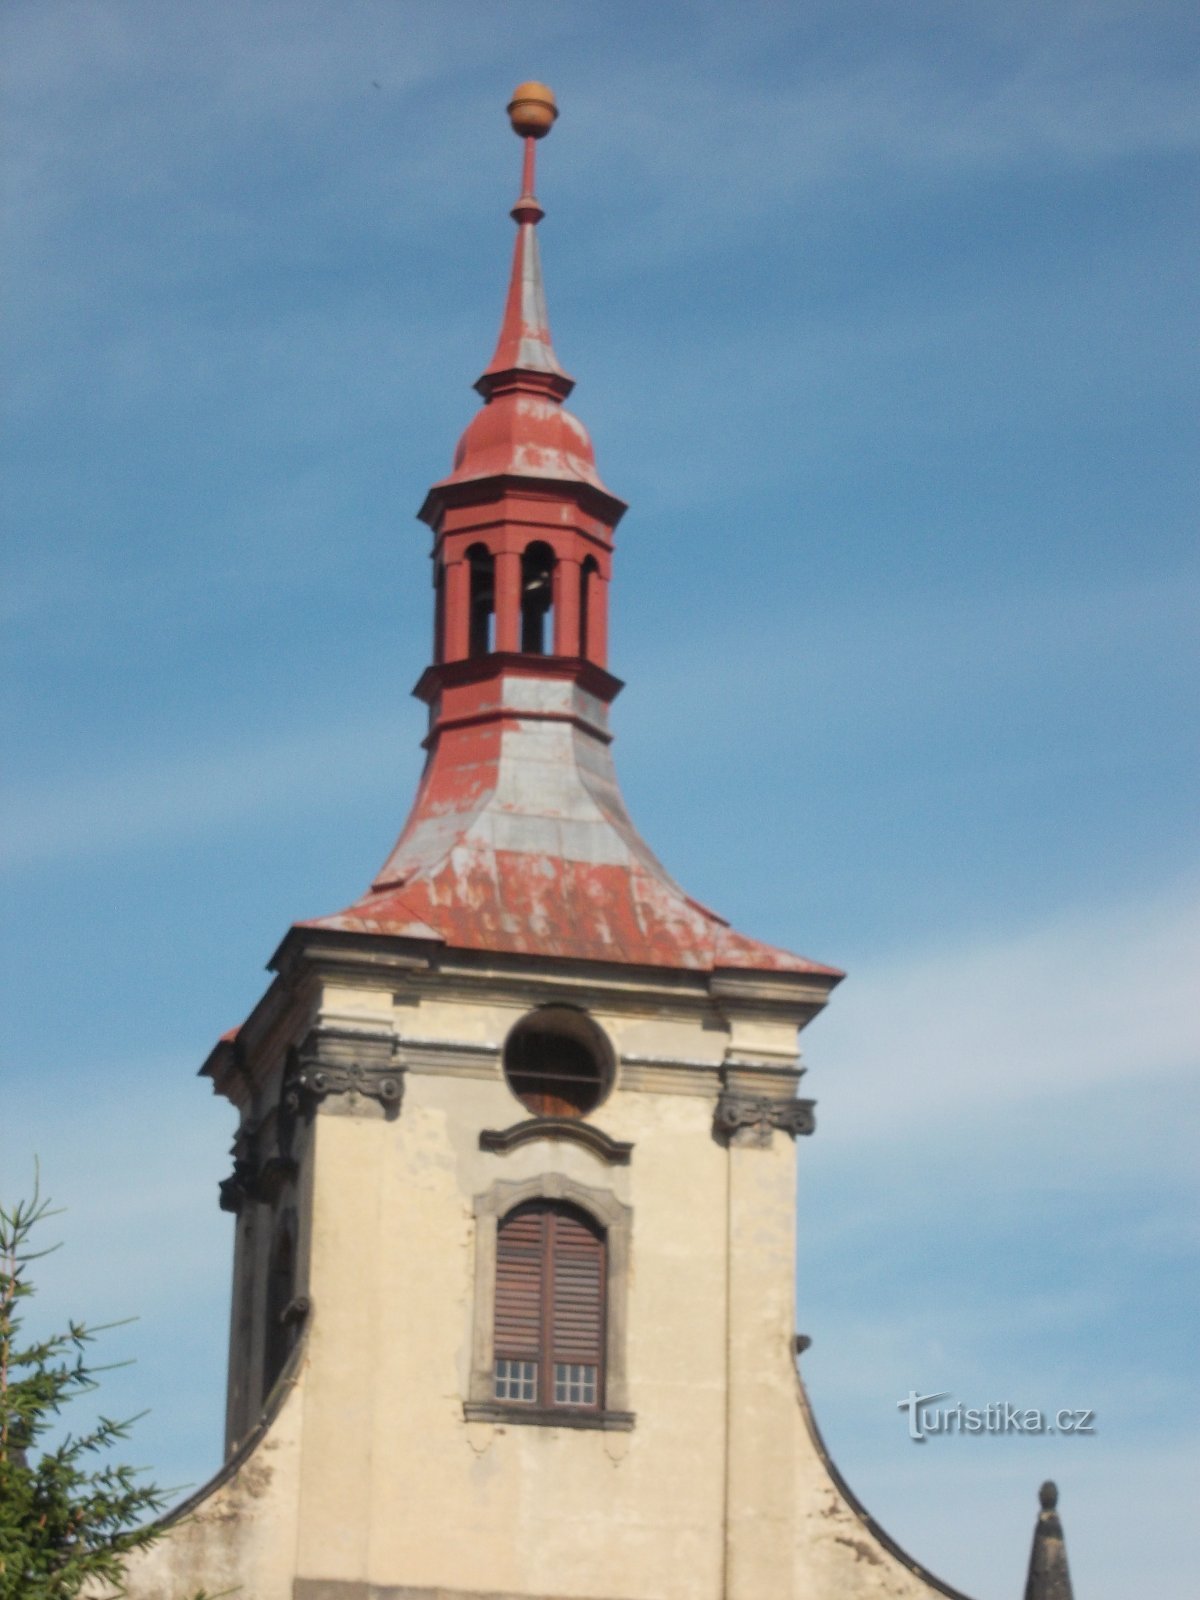 教堂钟楼开放时钟